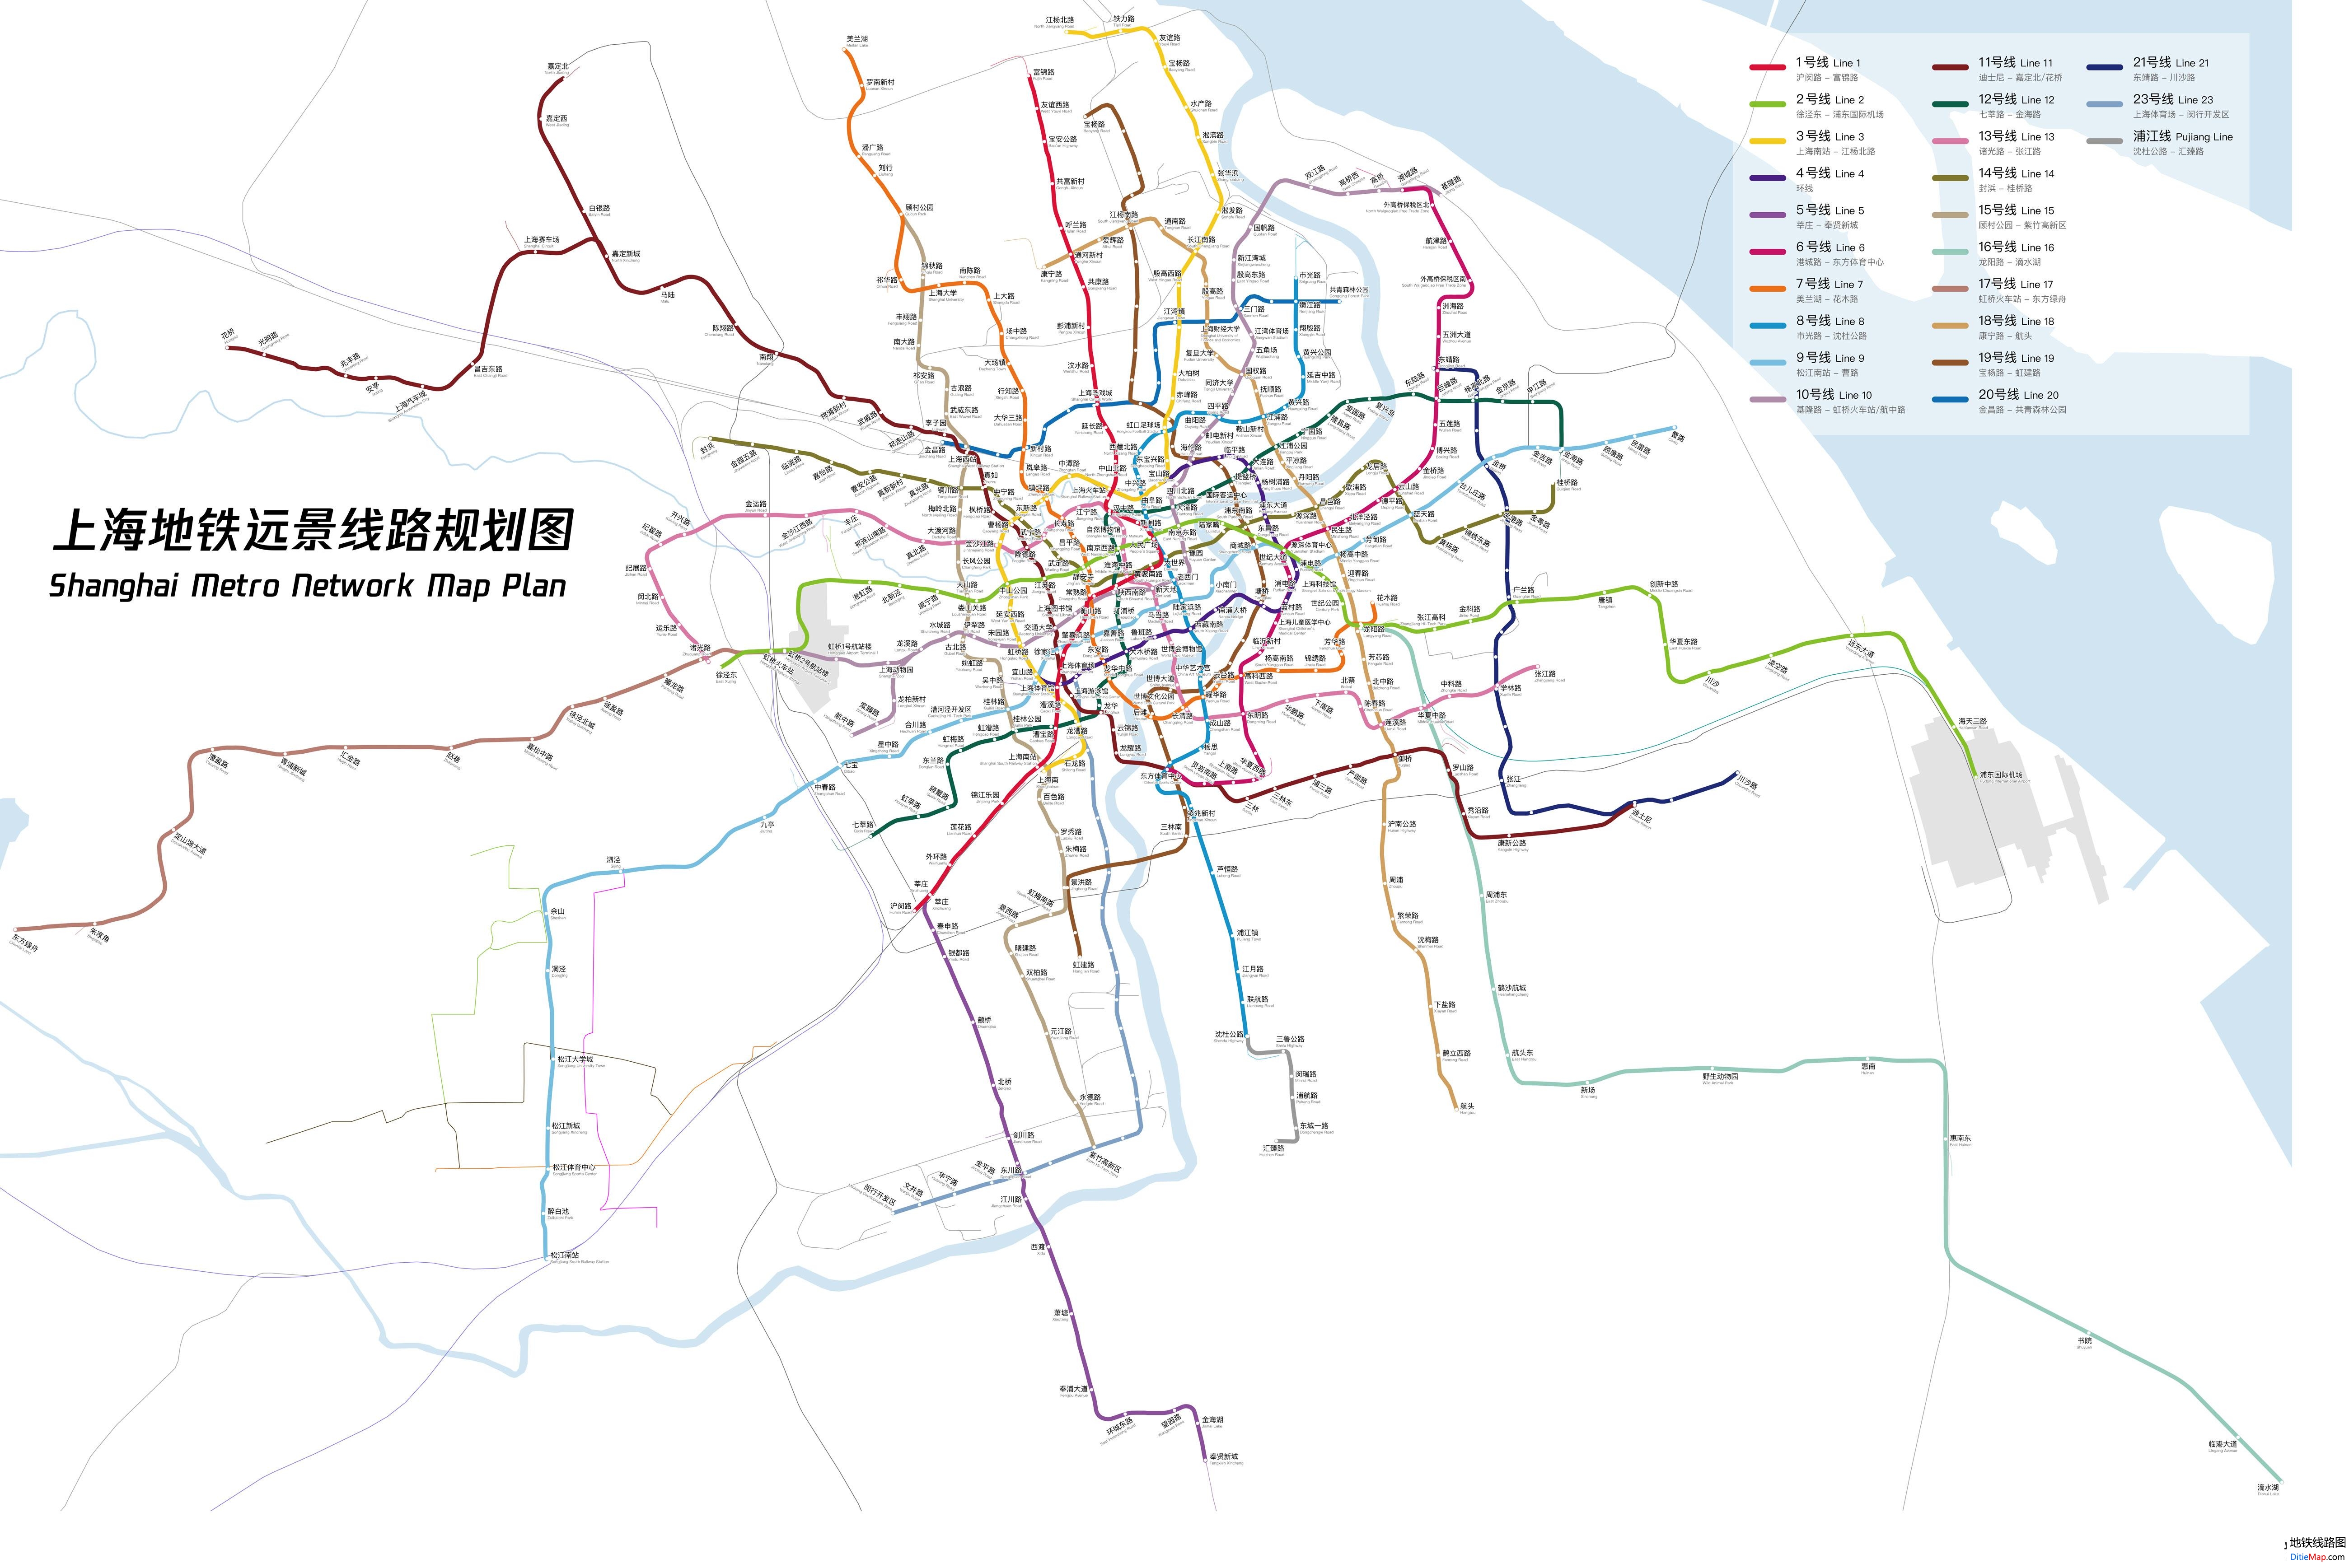 点击图片可查看下载大图)※线网规划图终以上海地铁建设实际情况为准